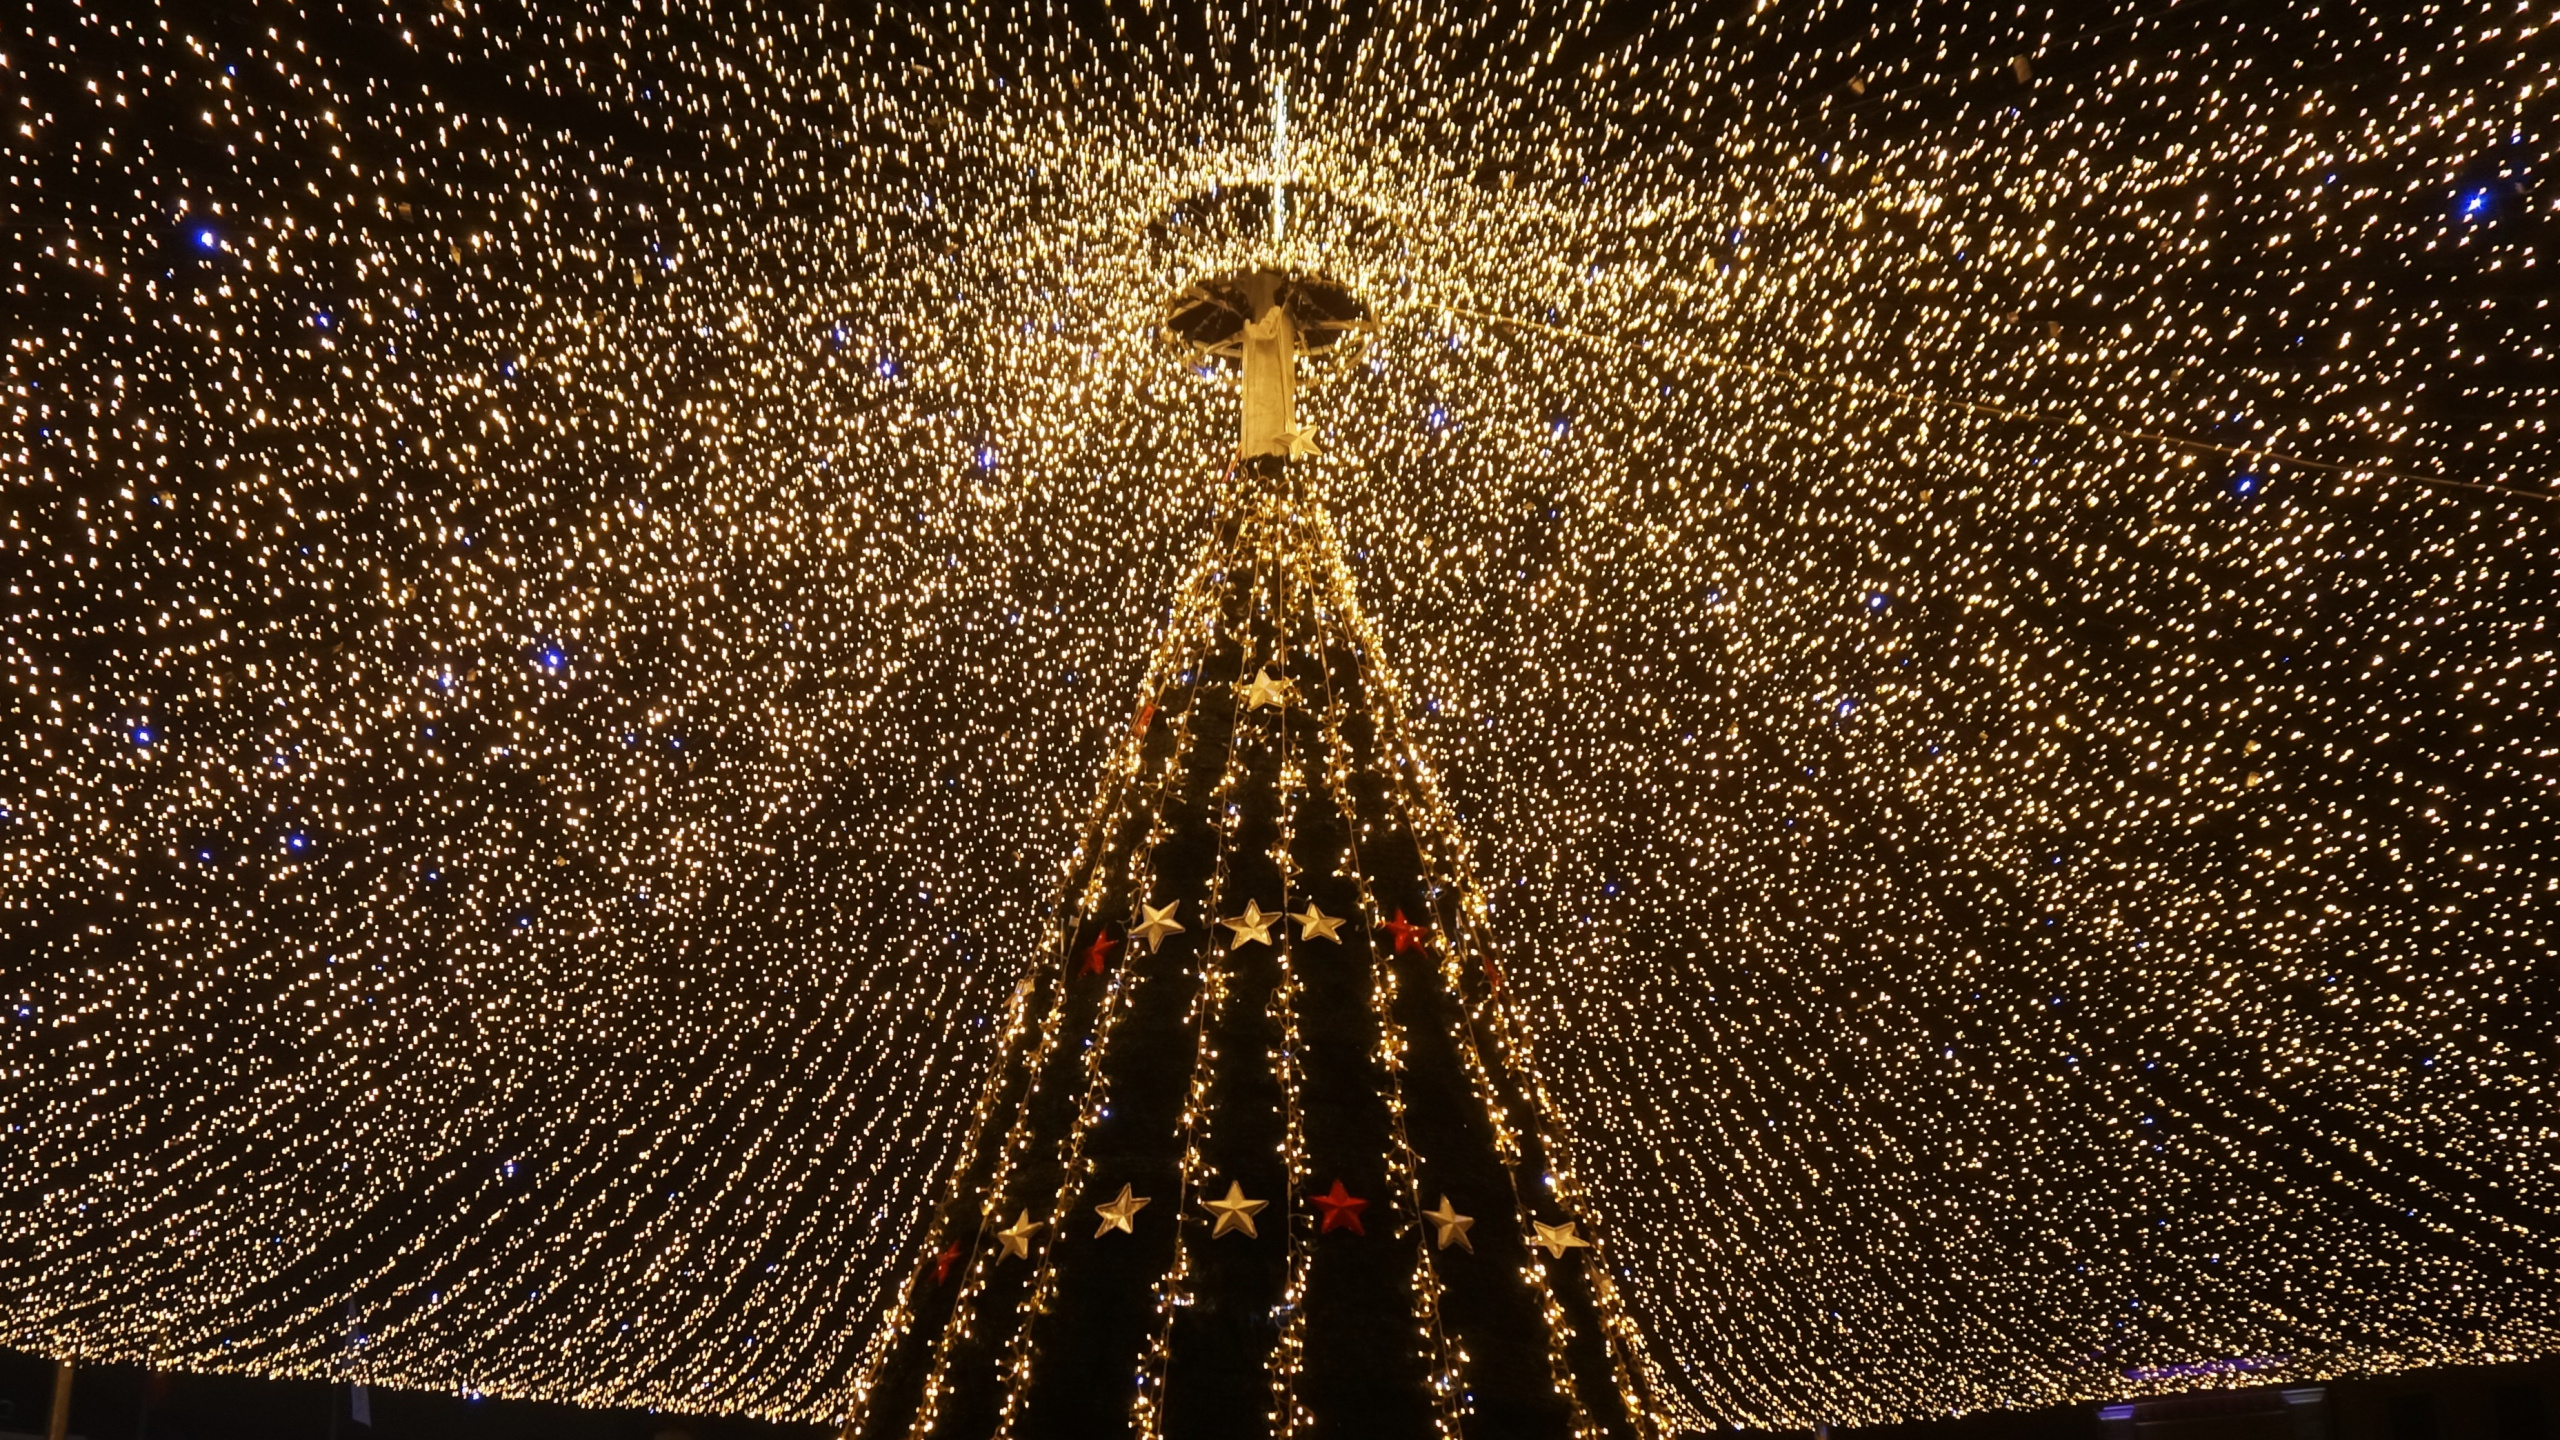 圣诞彩灯, 圣诞节那天, 光, 建筑, 对称 壁纸 2560x1440 允许